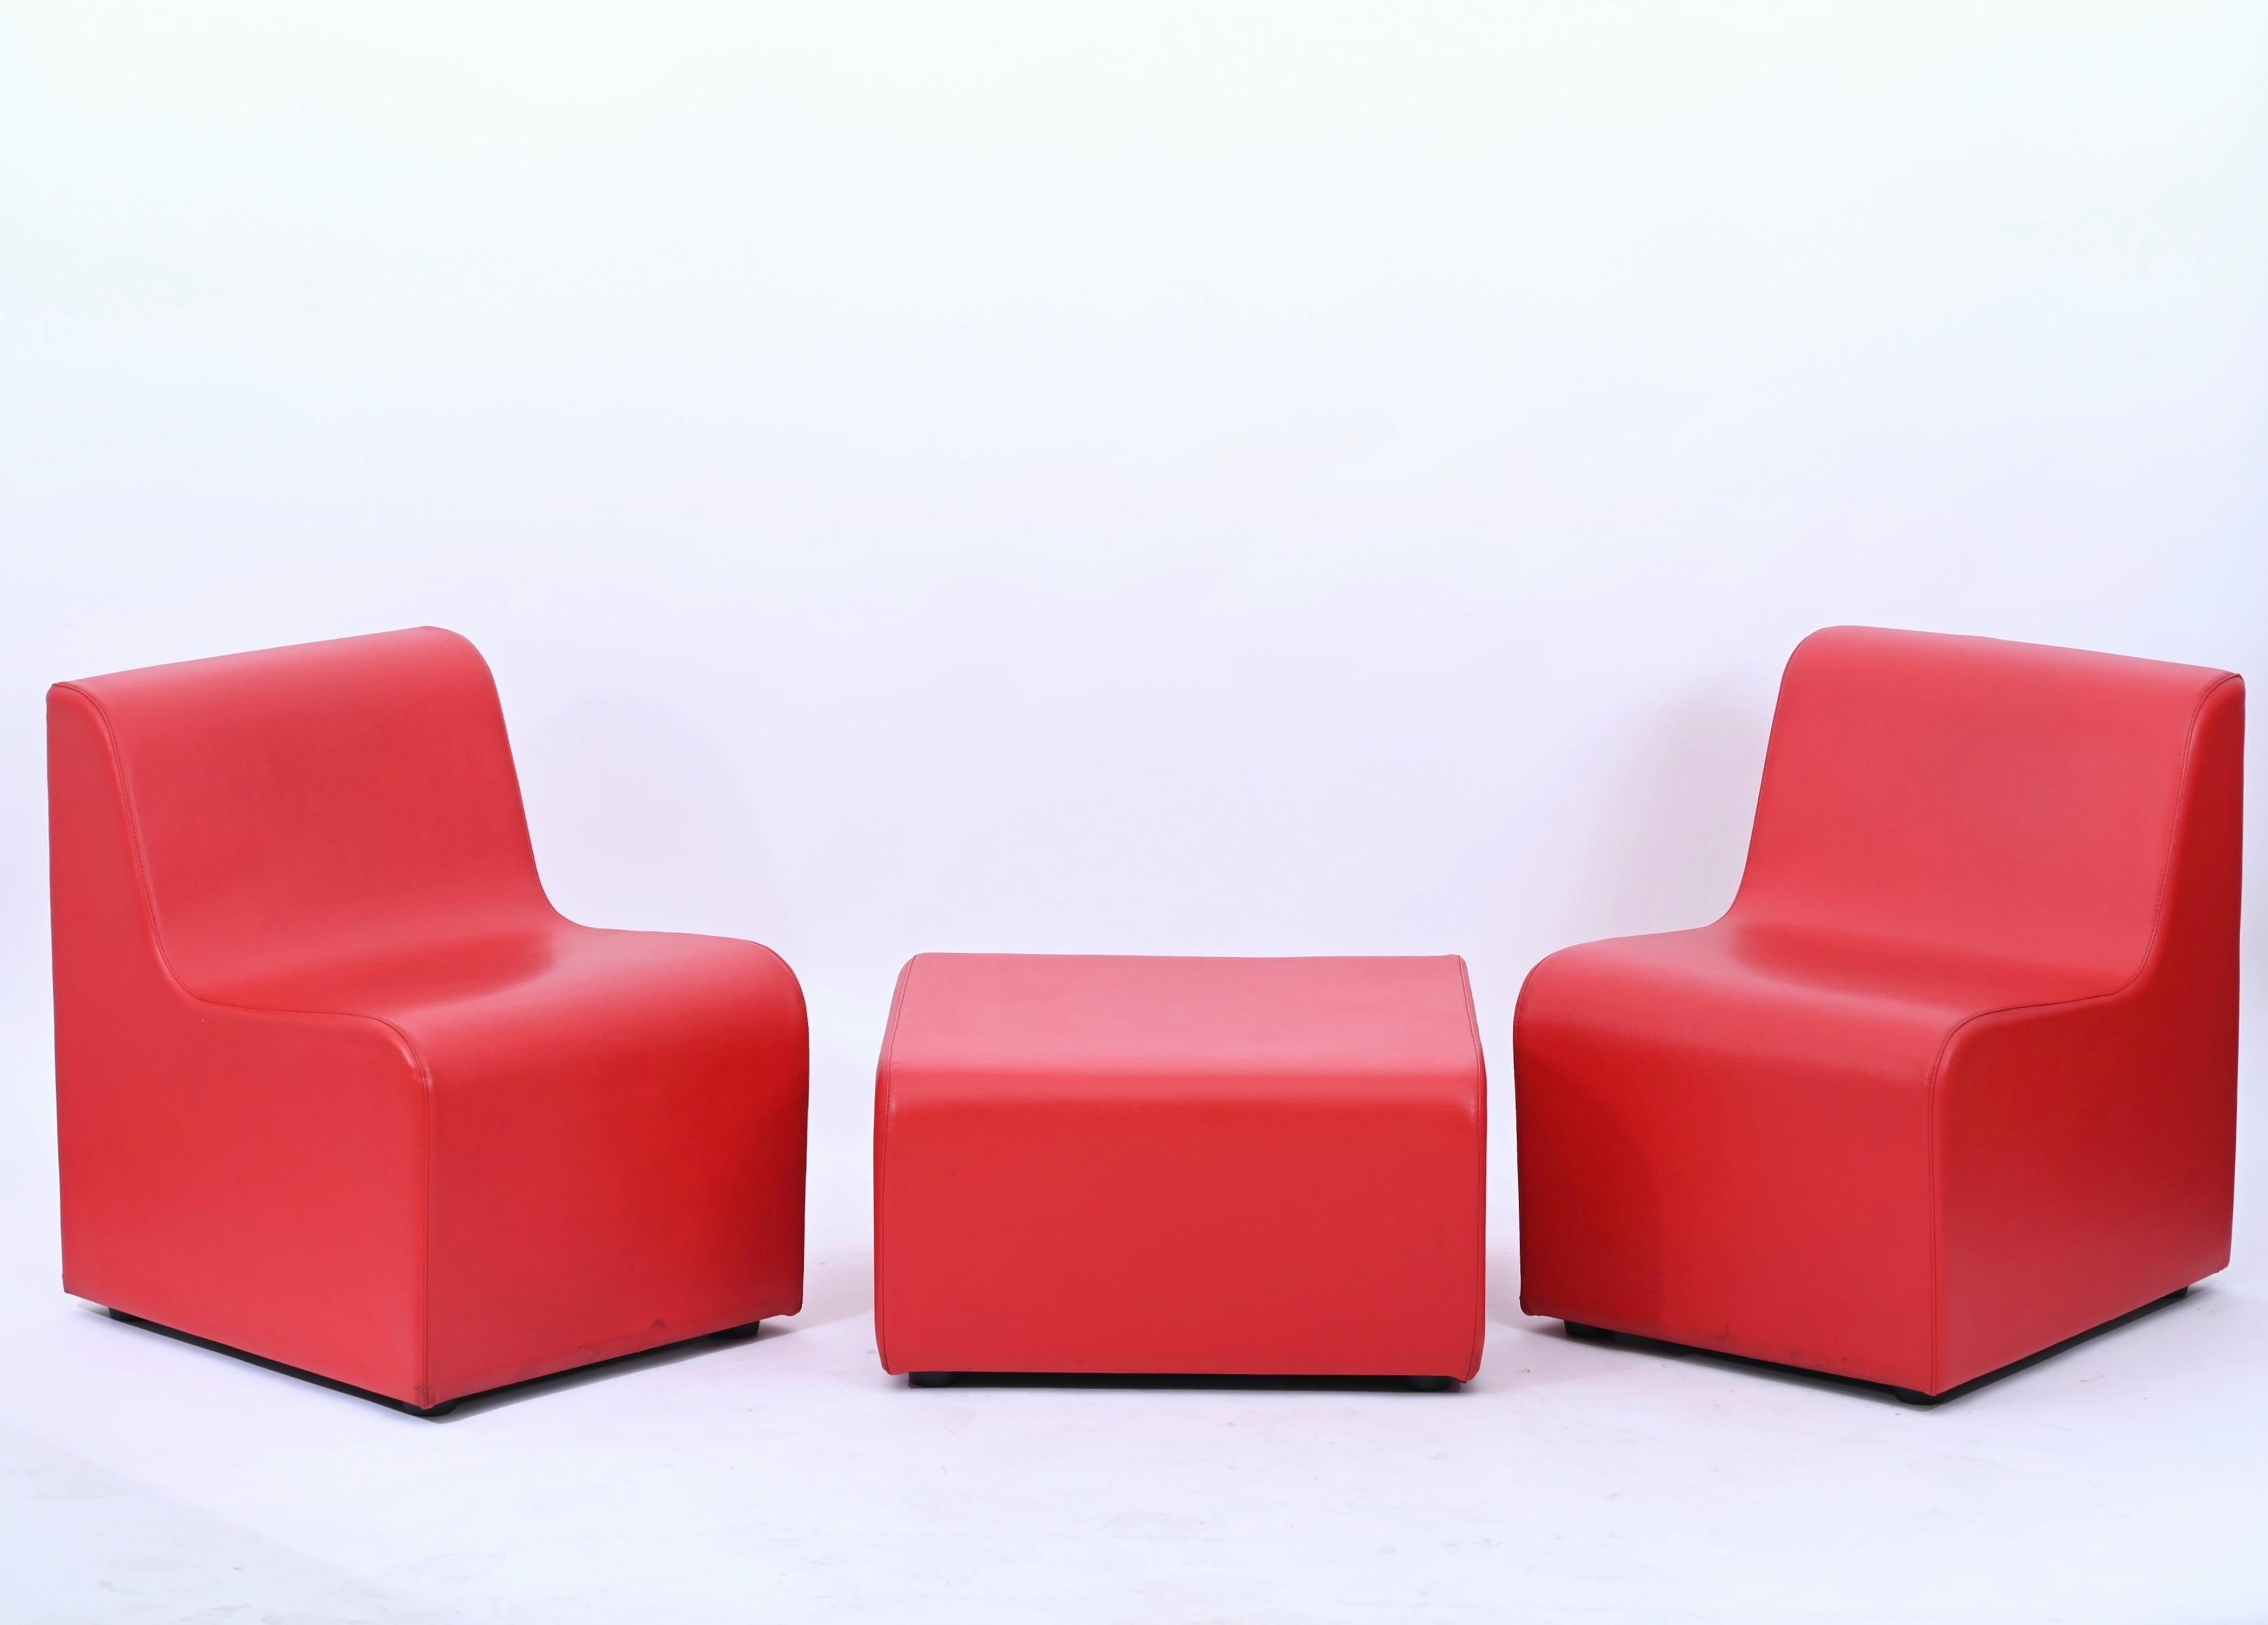 Bel ensemble modulaire de salon en similicuir rouge composé de deux chaises et d'un pouf. L'ensemble a été produit en Italie au début des années 1980.

Les lignes et les couleurs des chaises sont un exemple typique du design des meubles des années